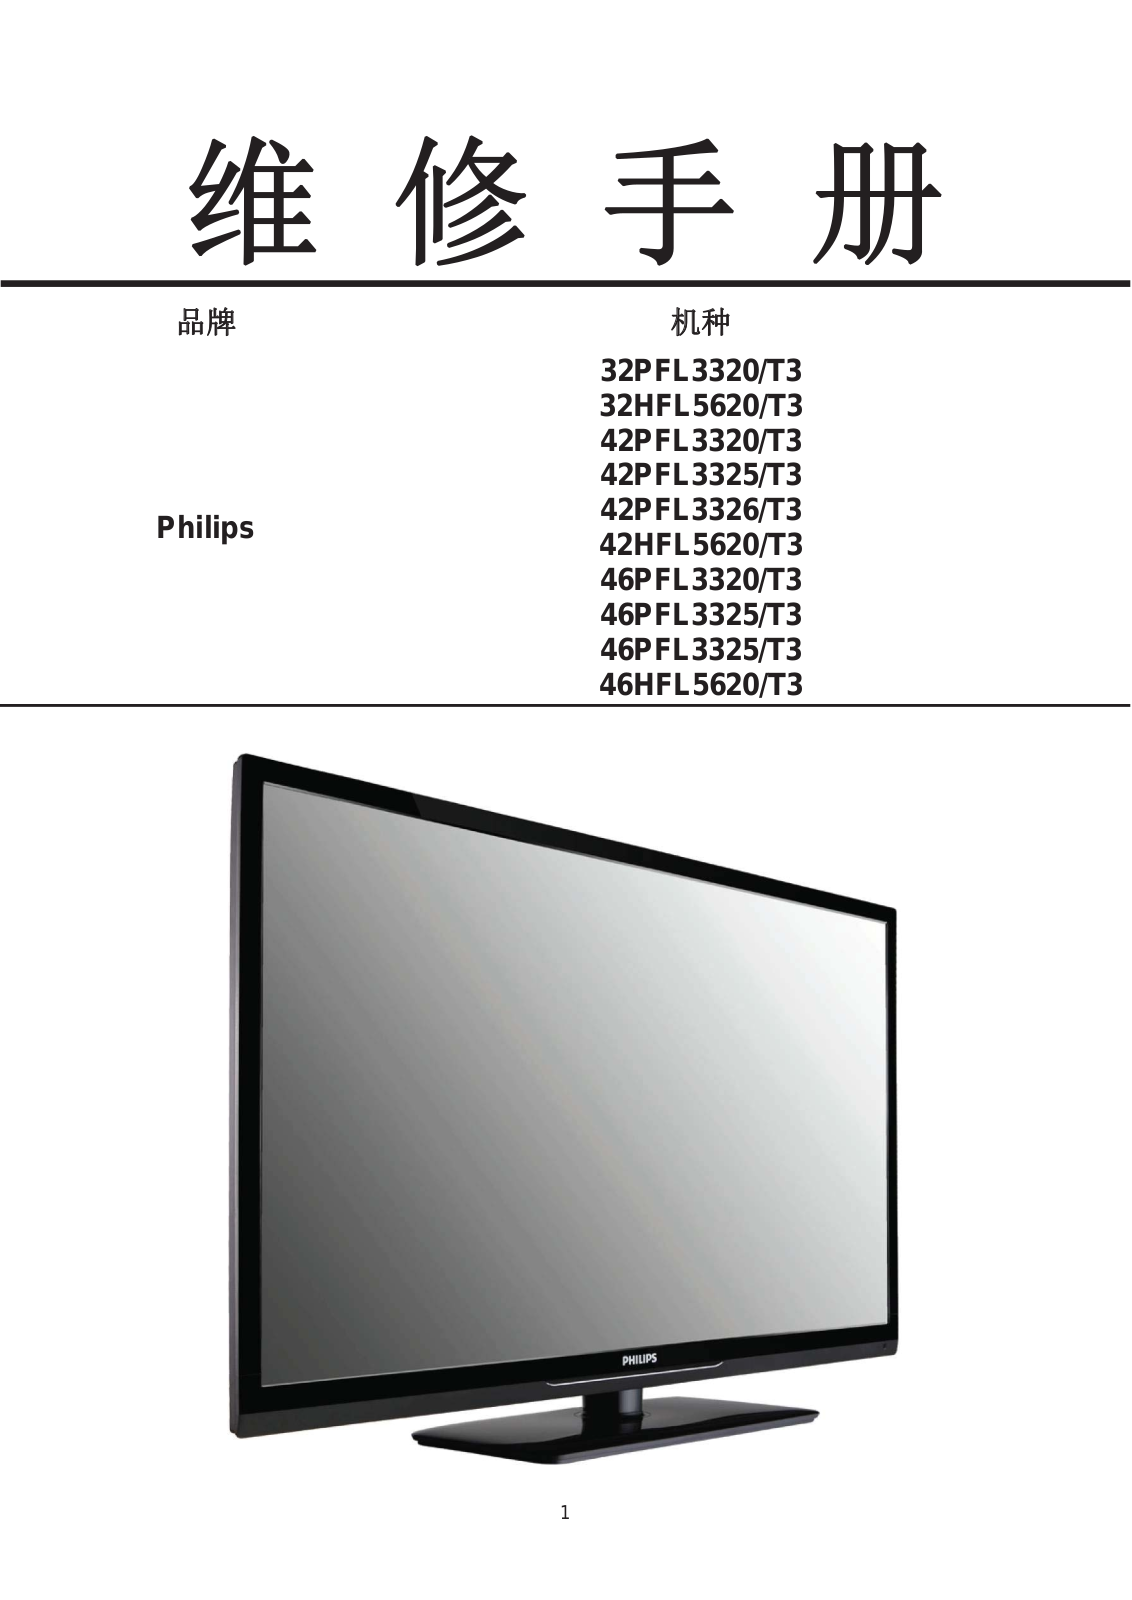 Philips 32PFL3320-T3 Schematic